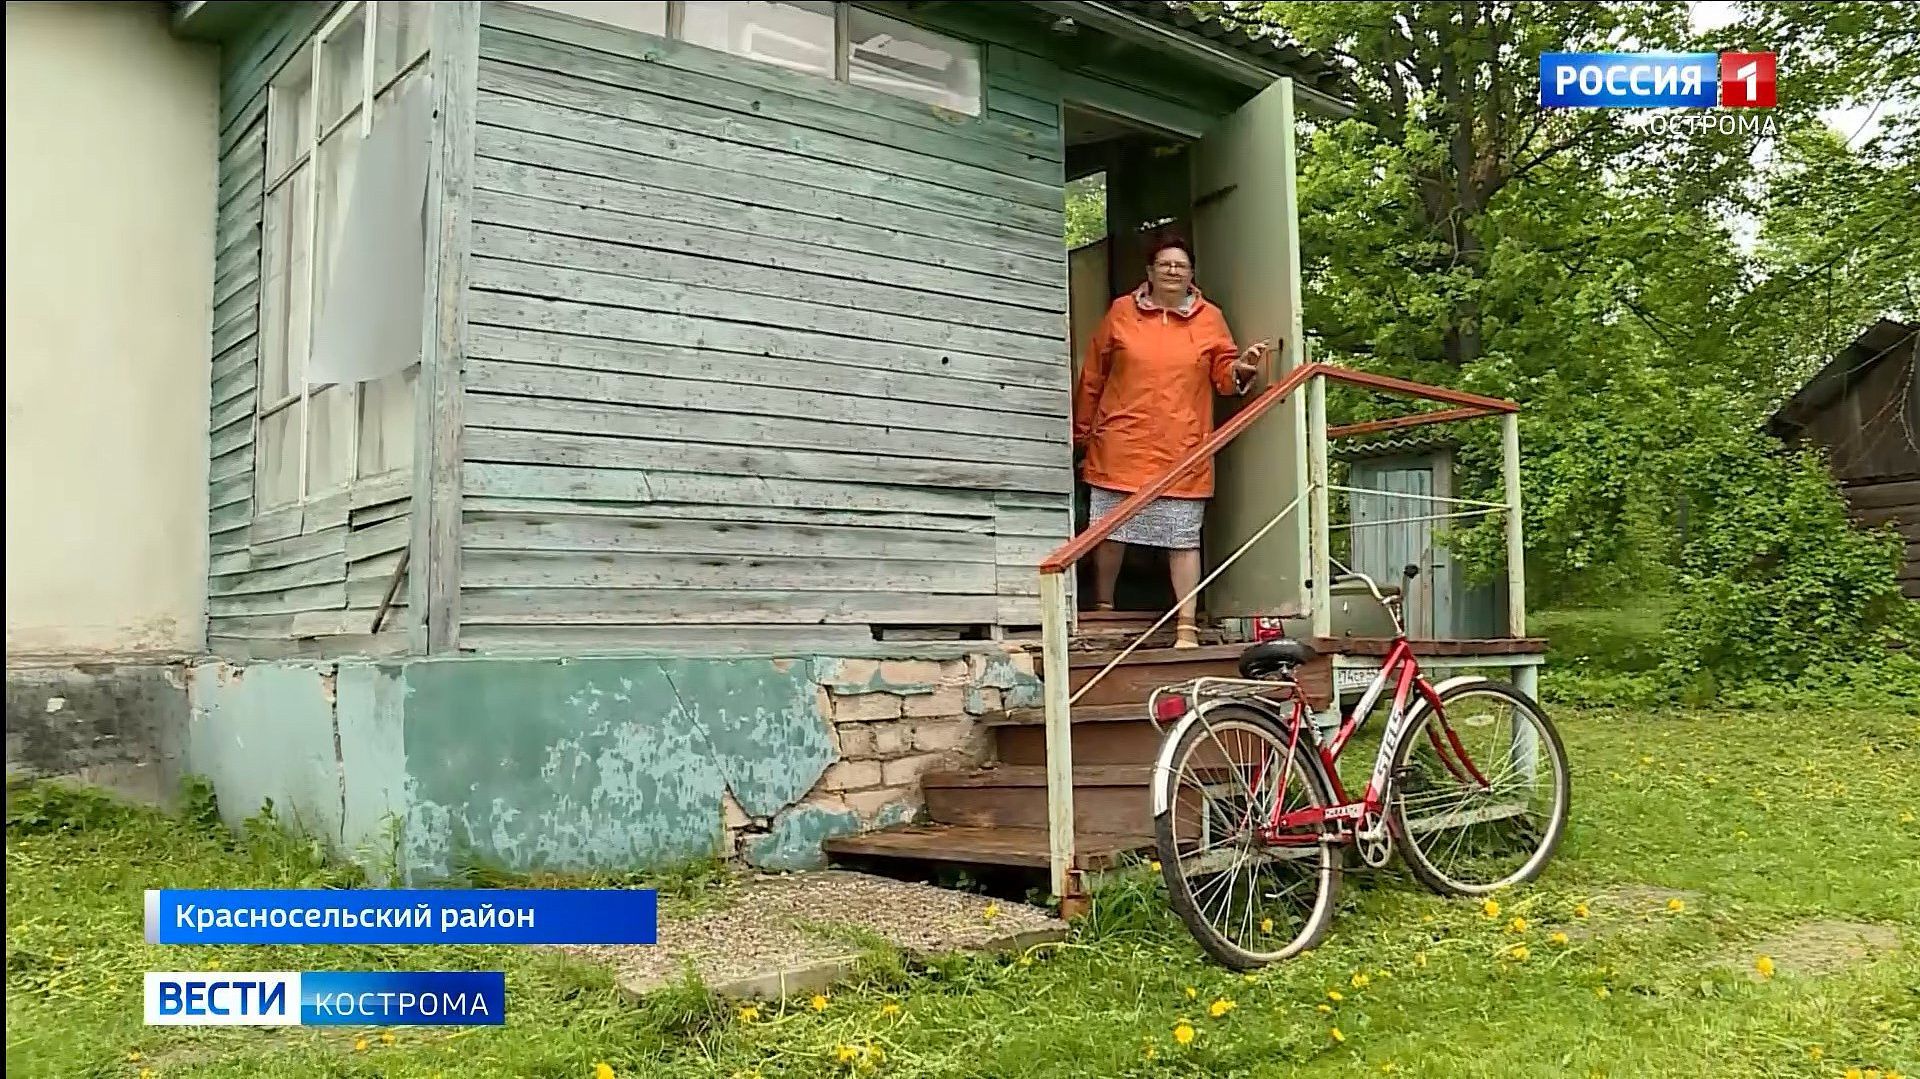 «Скорая» на велосипеде и роды в поле: фельдшер из-под Костромы рассказала о работе медиков в глубинке